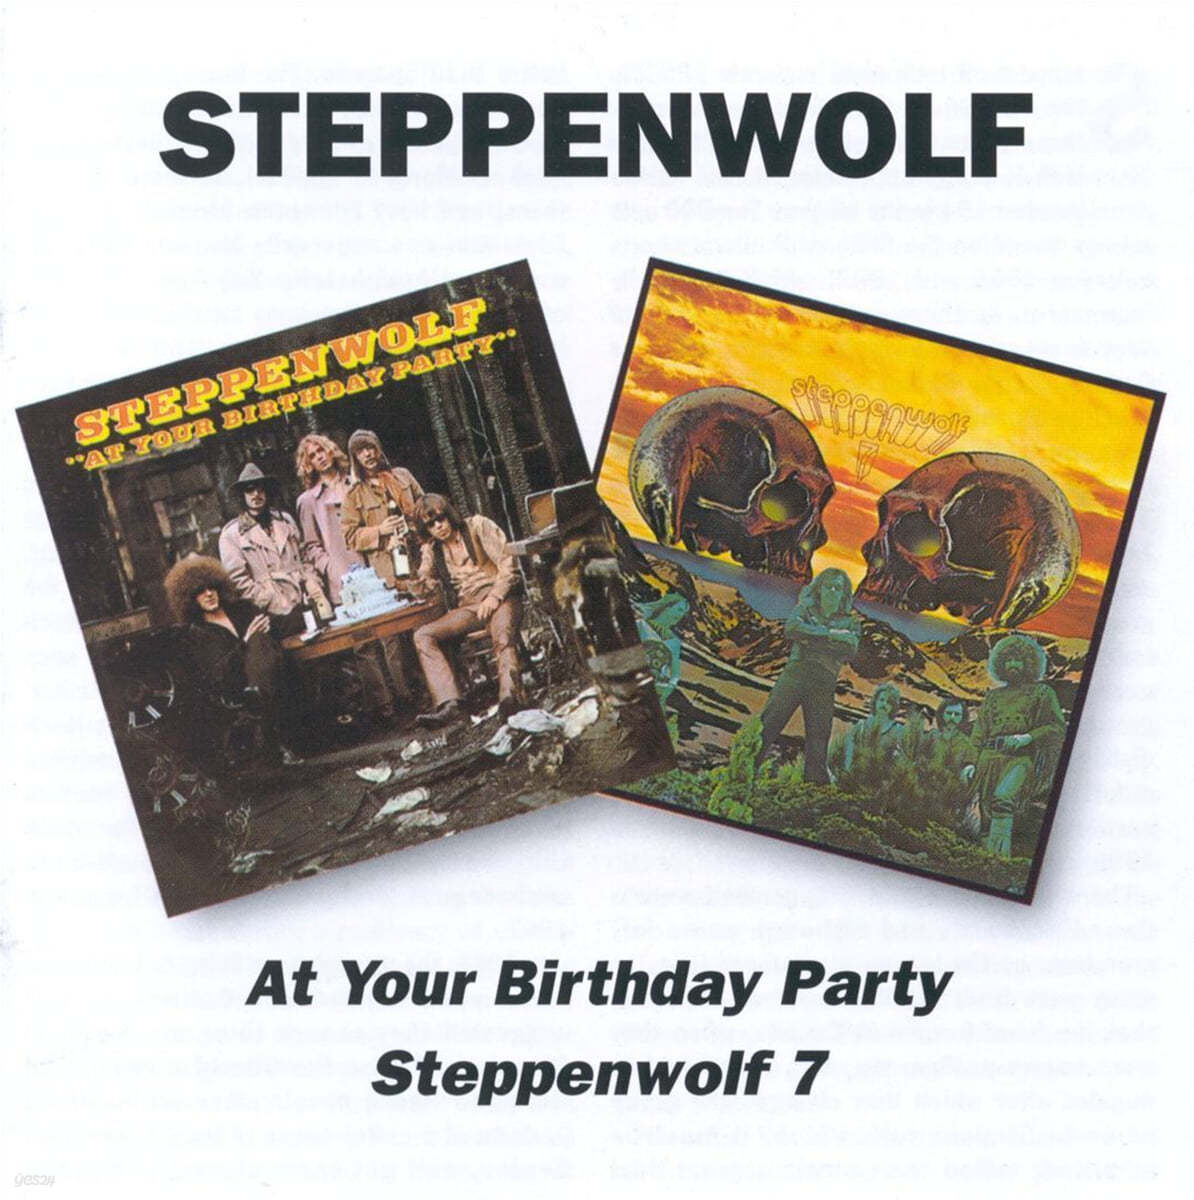 Steppenwolf (스태픈울프) - At Your Birthday Party / Steppenwolf 7